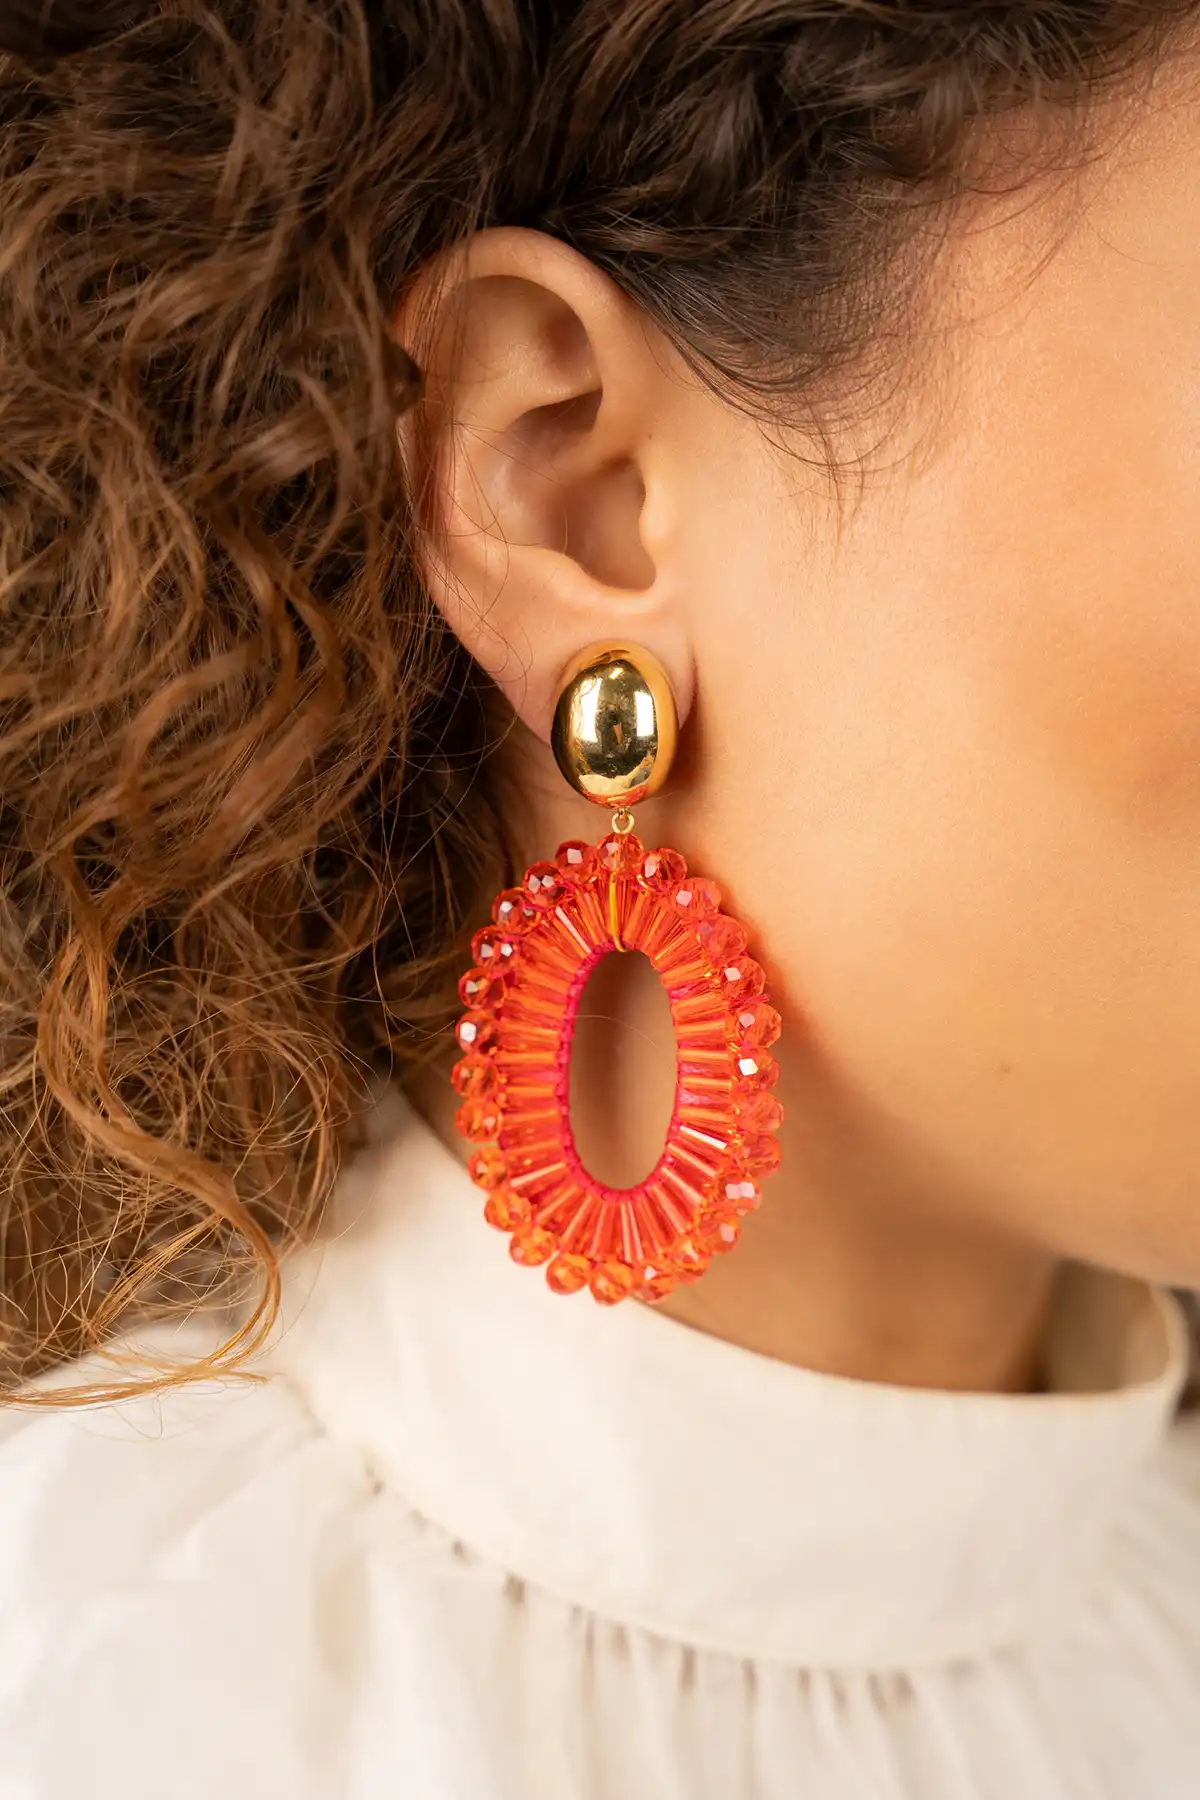 Orange earrings Ann-Mary oval double lion cliplott-theme.productDescriptionPage.SEO.byTheBrand